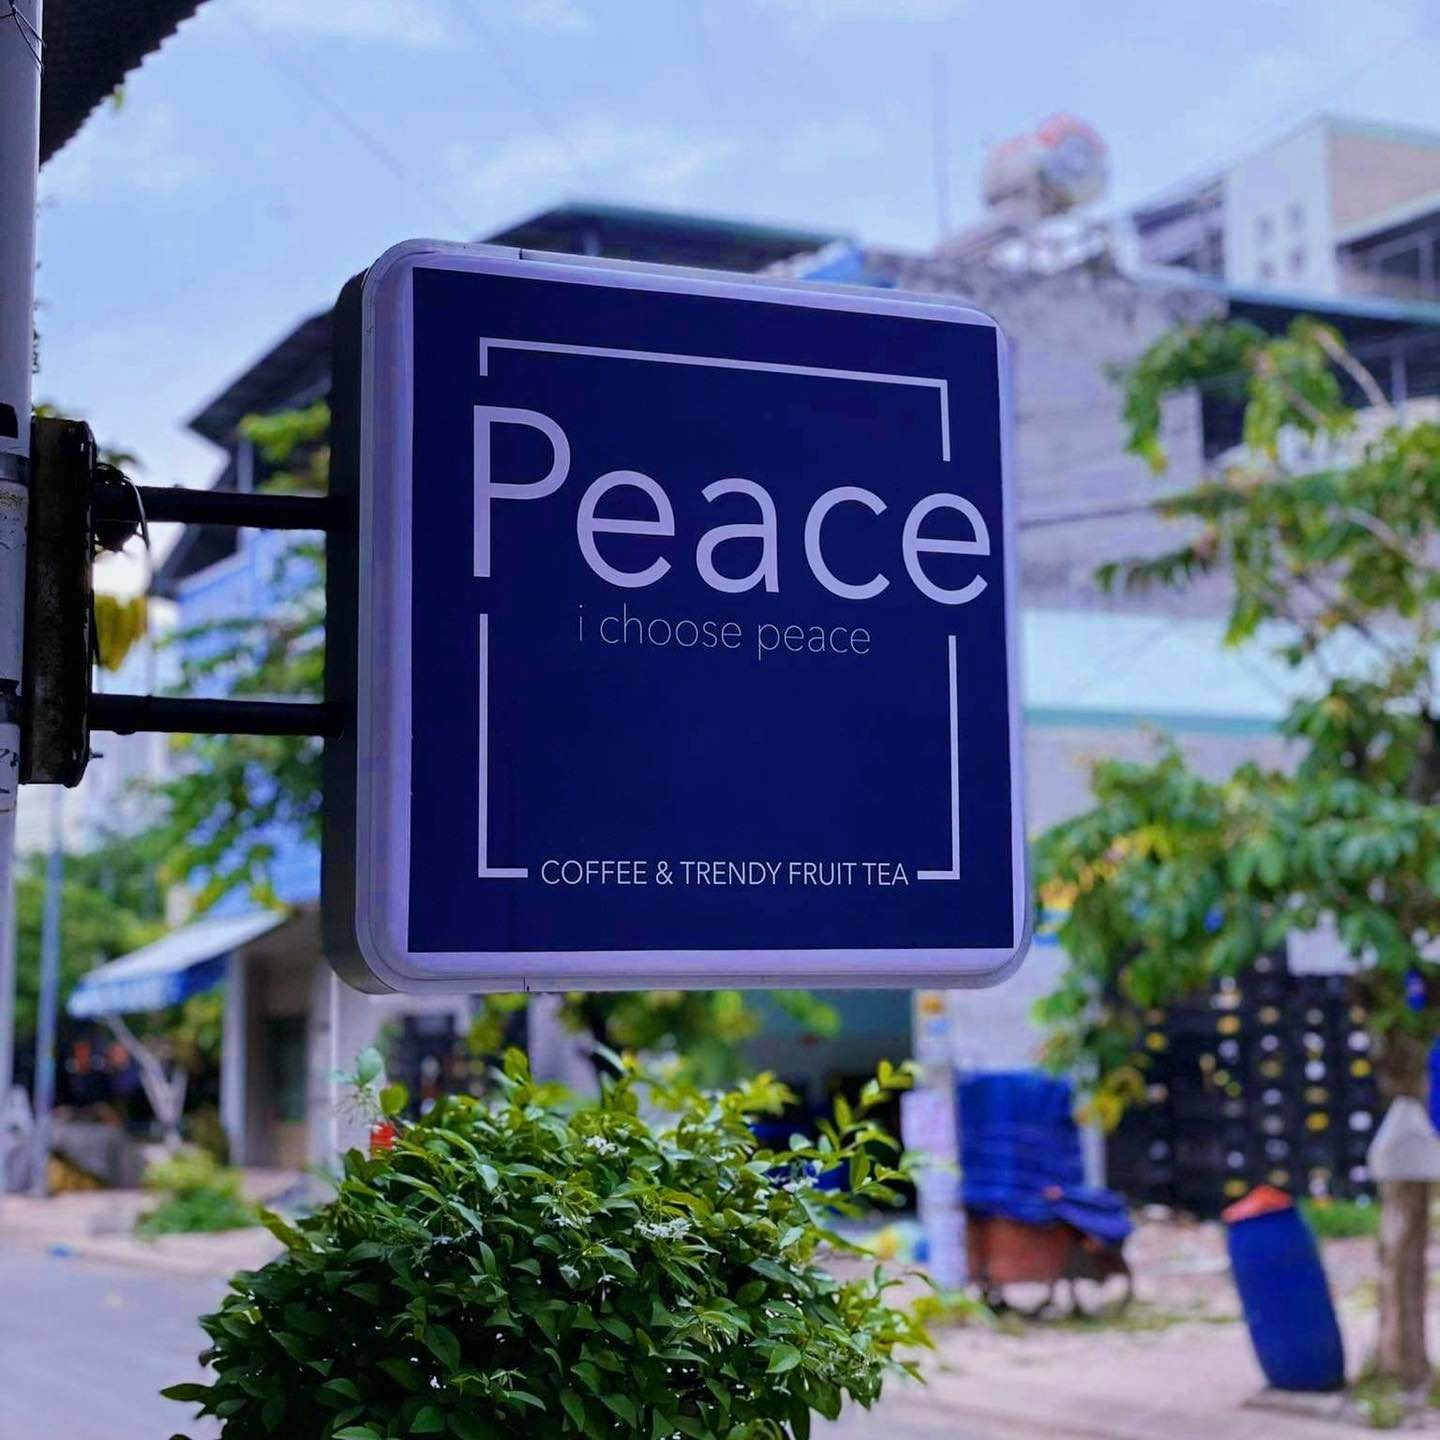 Peace Coffee Trendy Fruit quán cà phê làm điên đảo giới trẻ Bình Dương 2